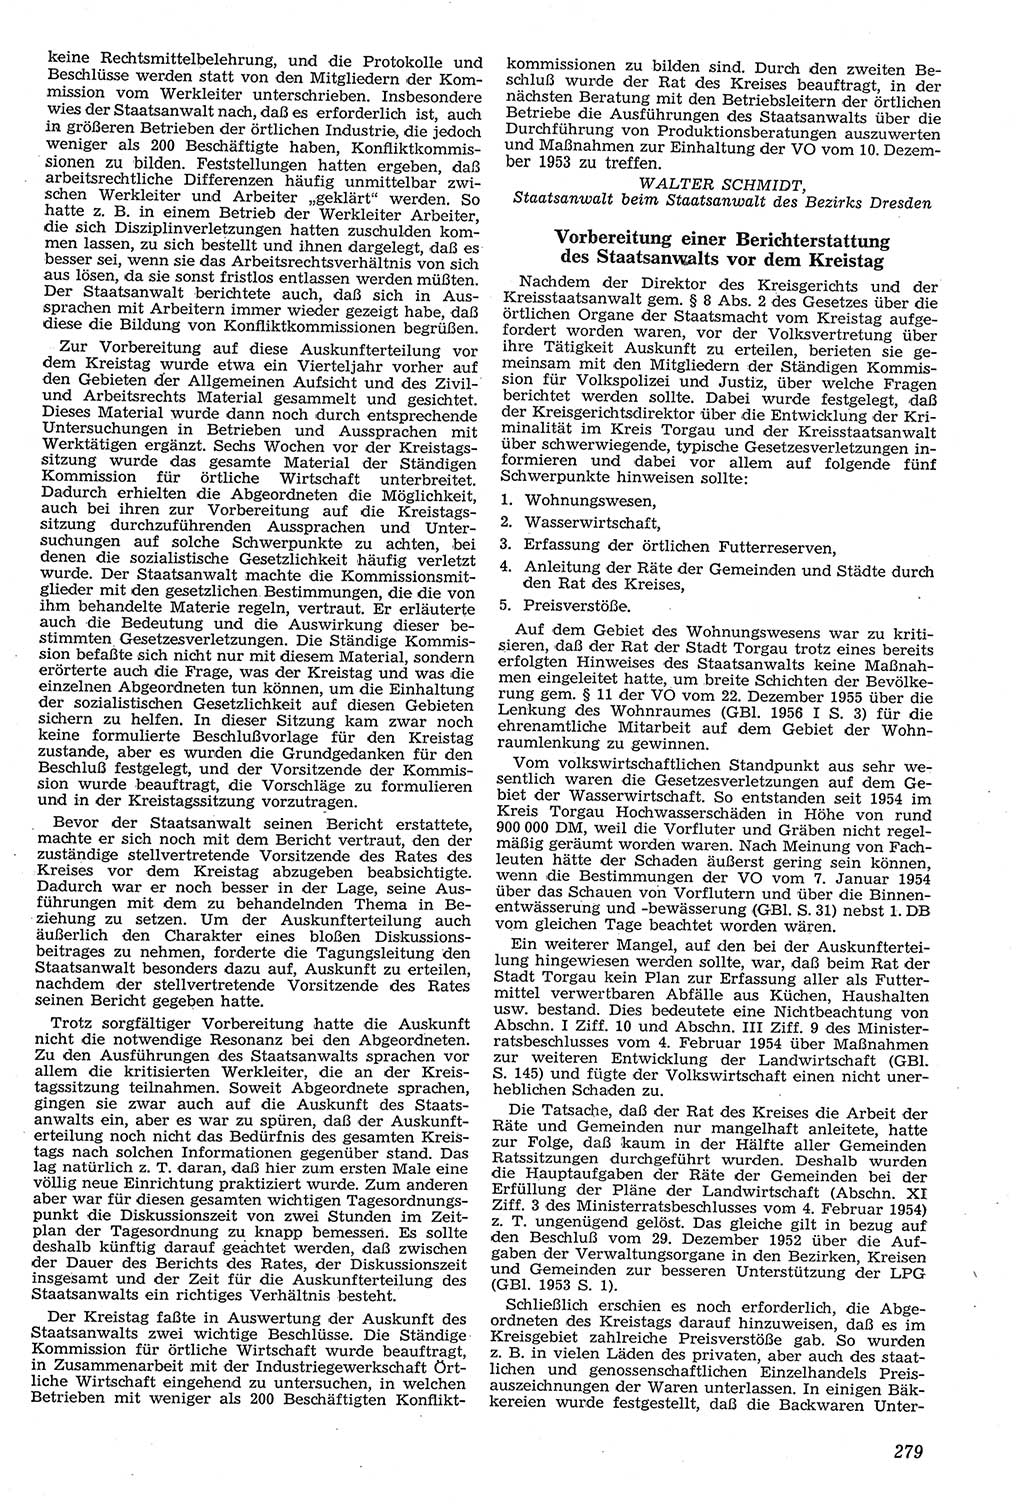 Neue Justiz (NJ), Zeitschrift für Recht und Rechtswissenschaft [Deutsche Demokratische Republik (DDR)], 11. Jahrgang 1957, Seite 279 (NJ DDR 1957, S. 279)